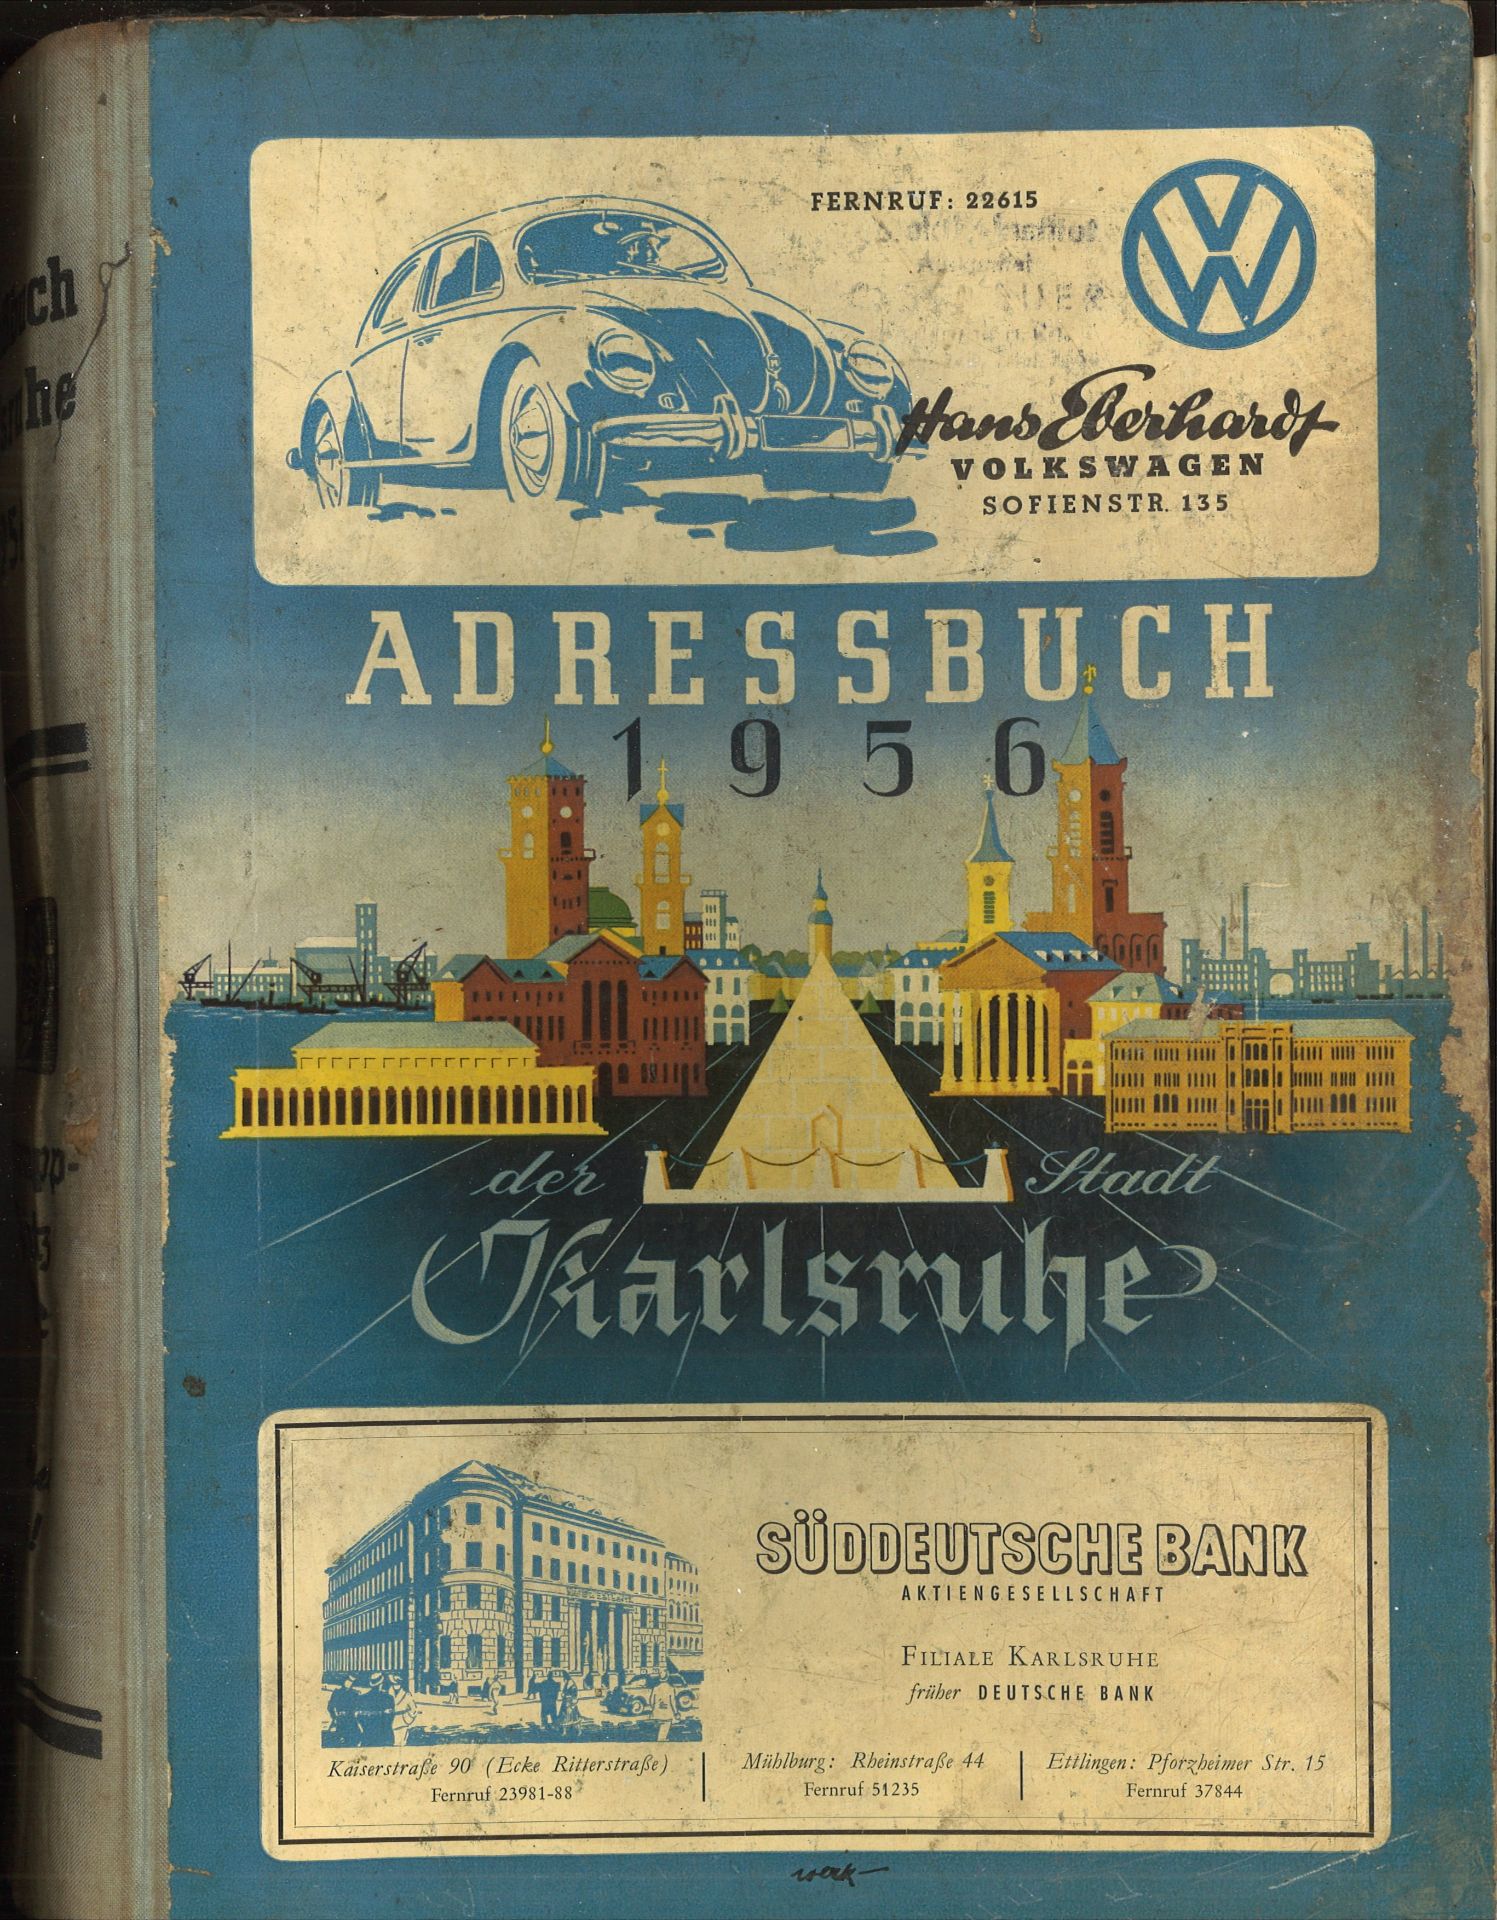 Adressbuch der Stadt Karlsruhe von 1956, neunundsiebzigster Jahrgang, Einband beschädigt,